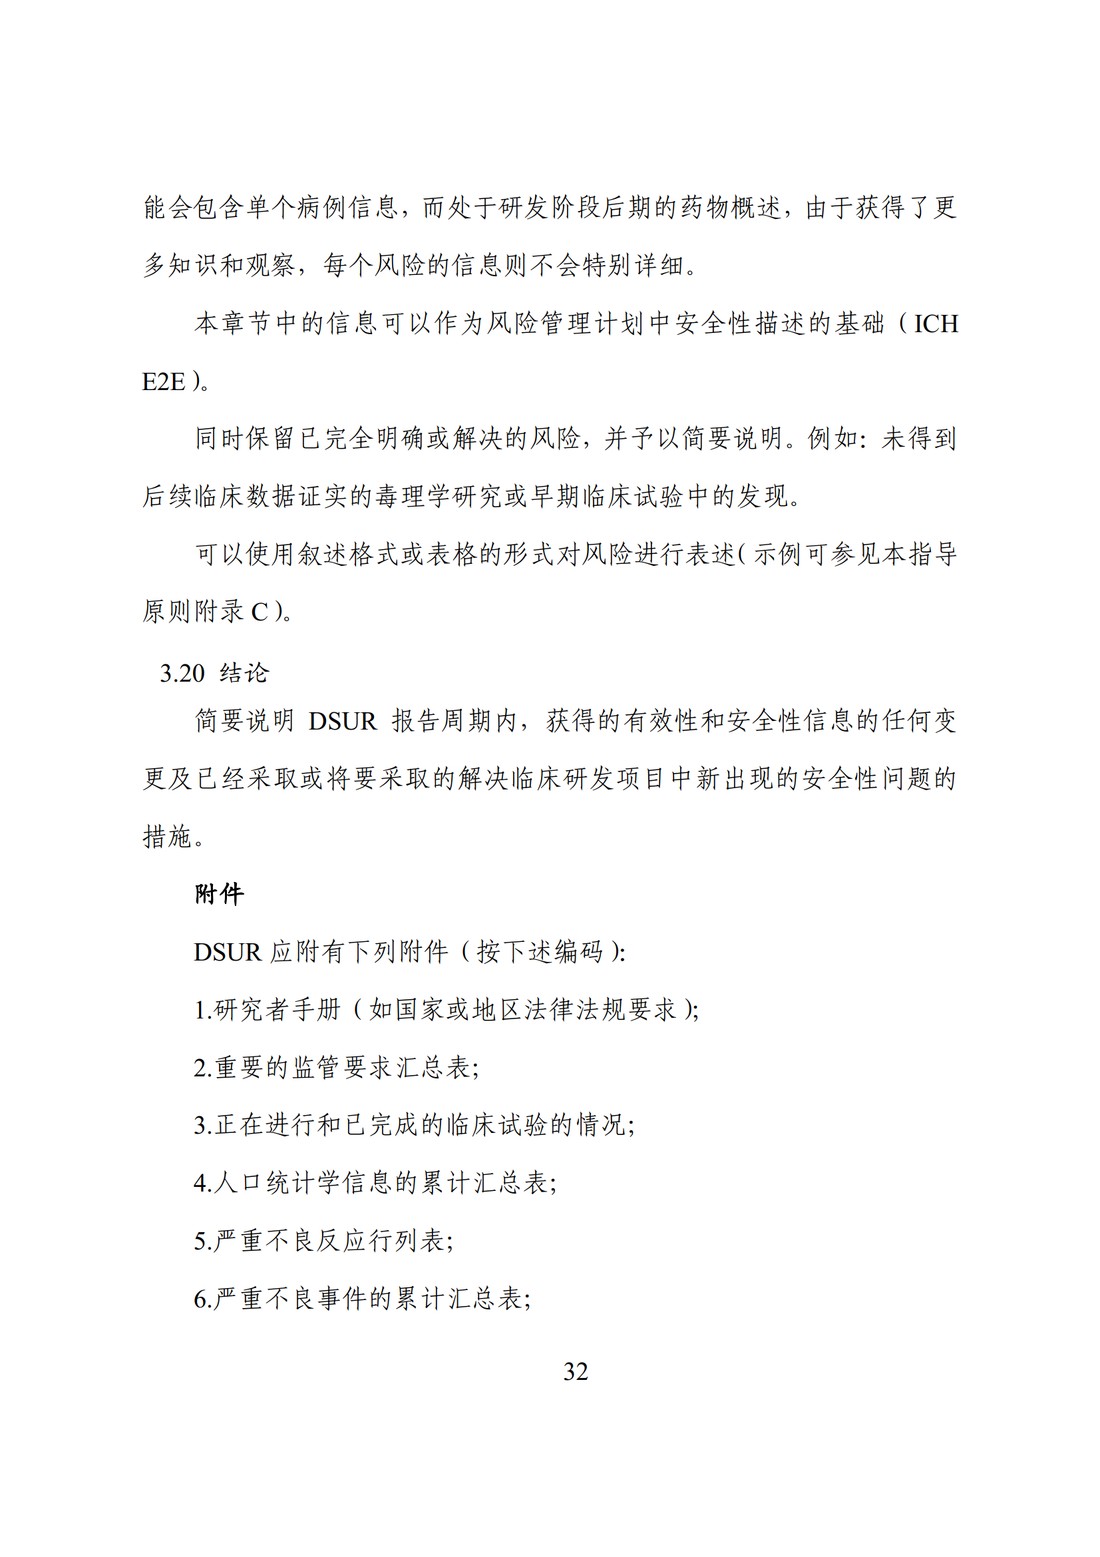 E2F 研发期间安全性更新报告(中文翻译公开征求意见稿)_37.jpg